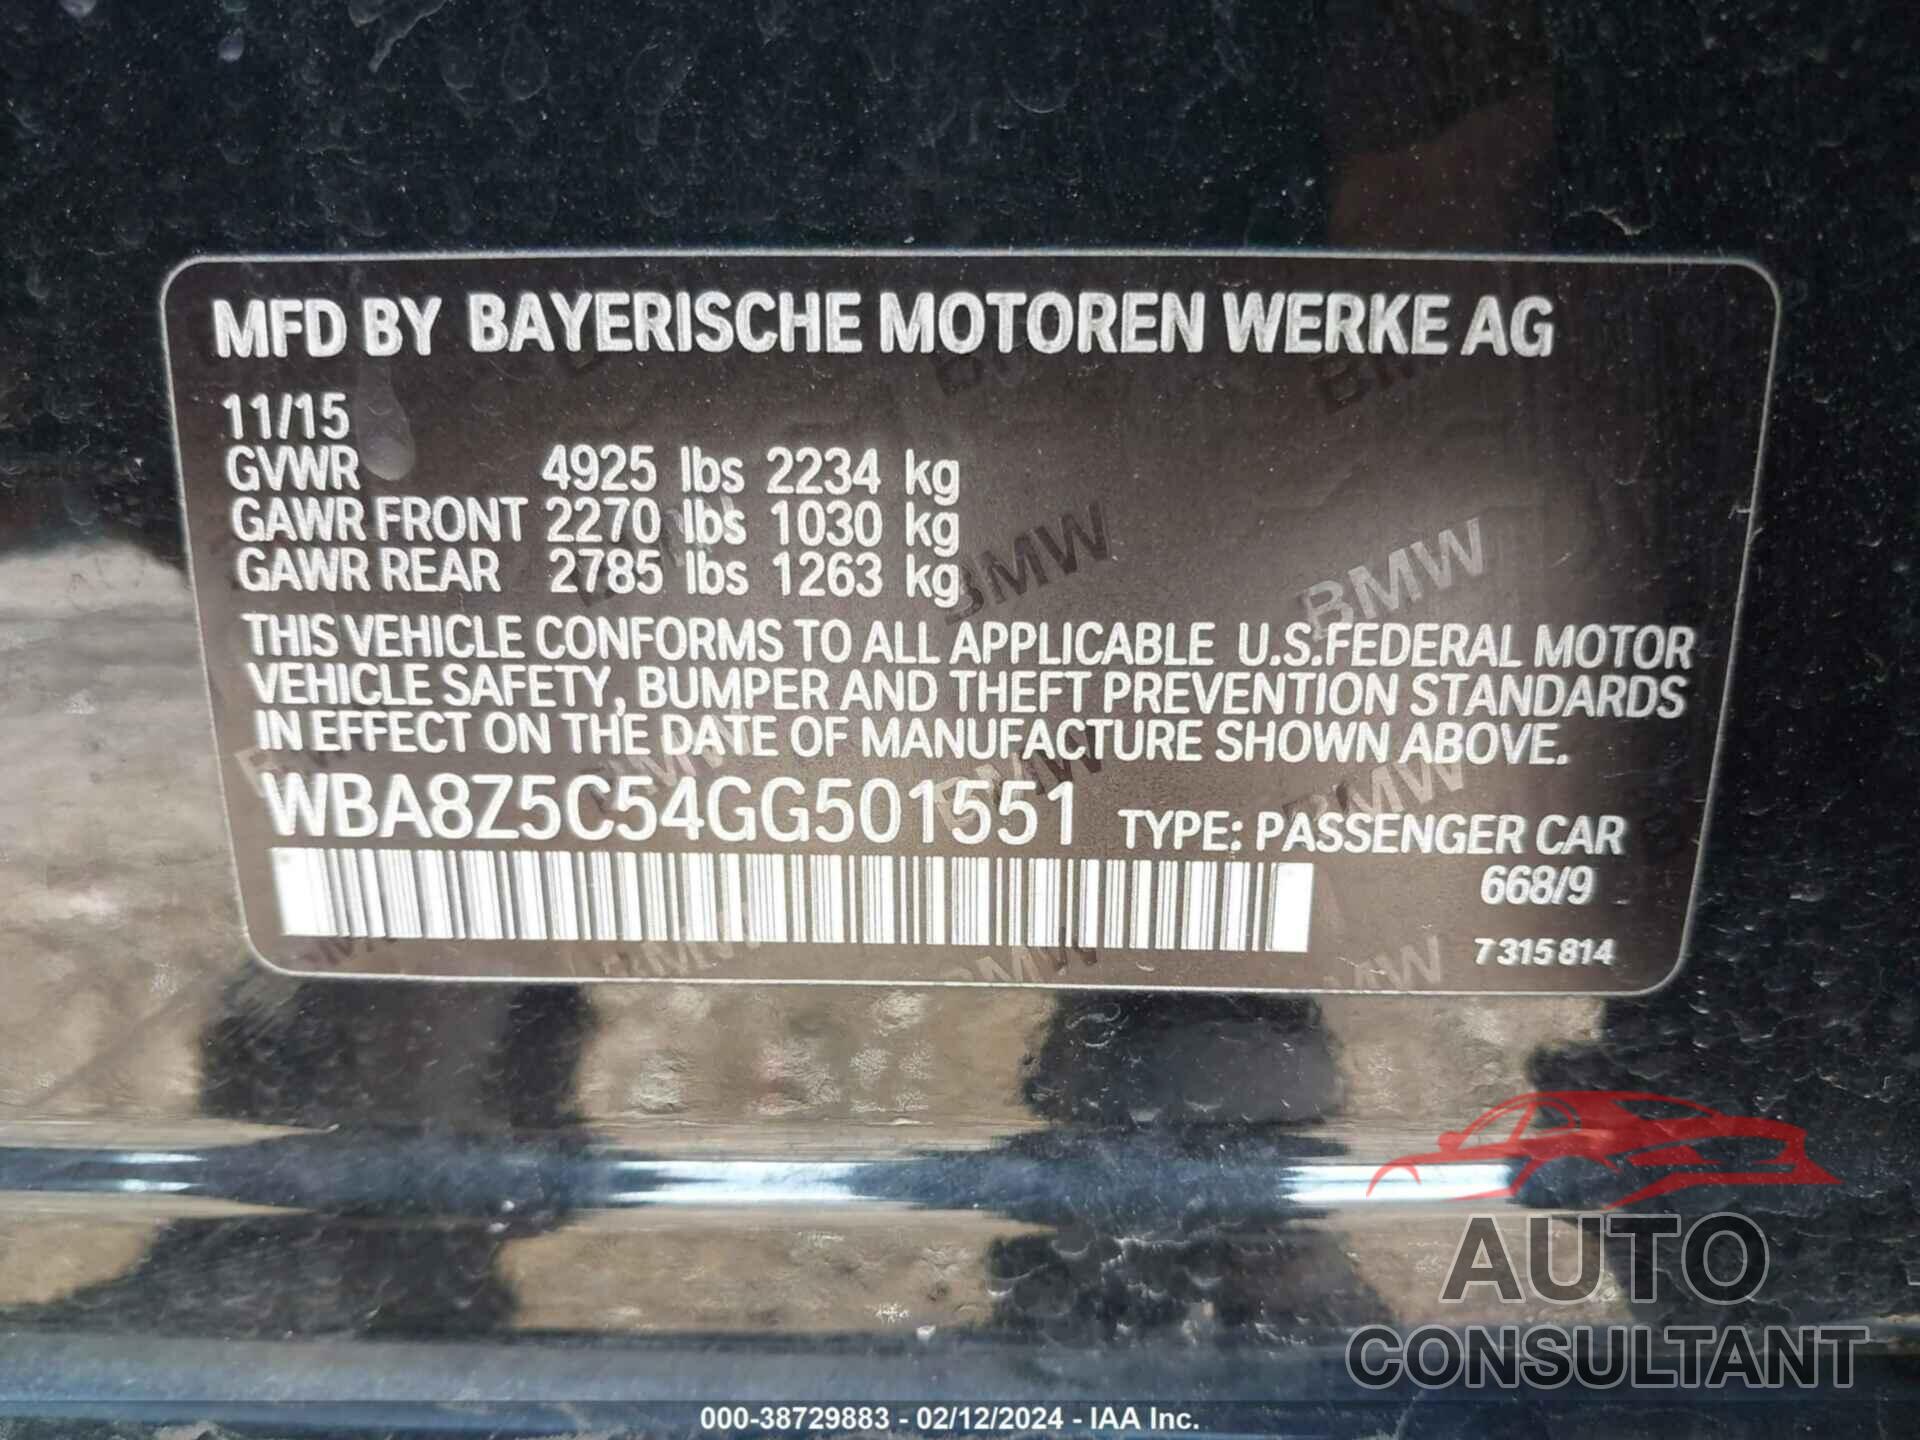 BMW 328I GRAN TURISMO 2016 - WBA8Z5C54GG501551